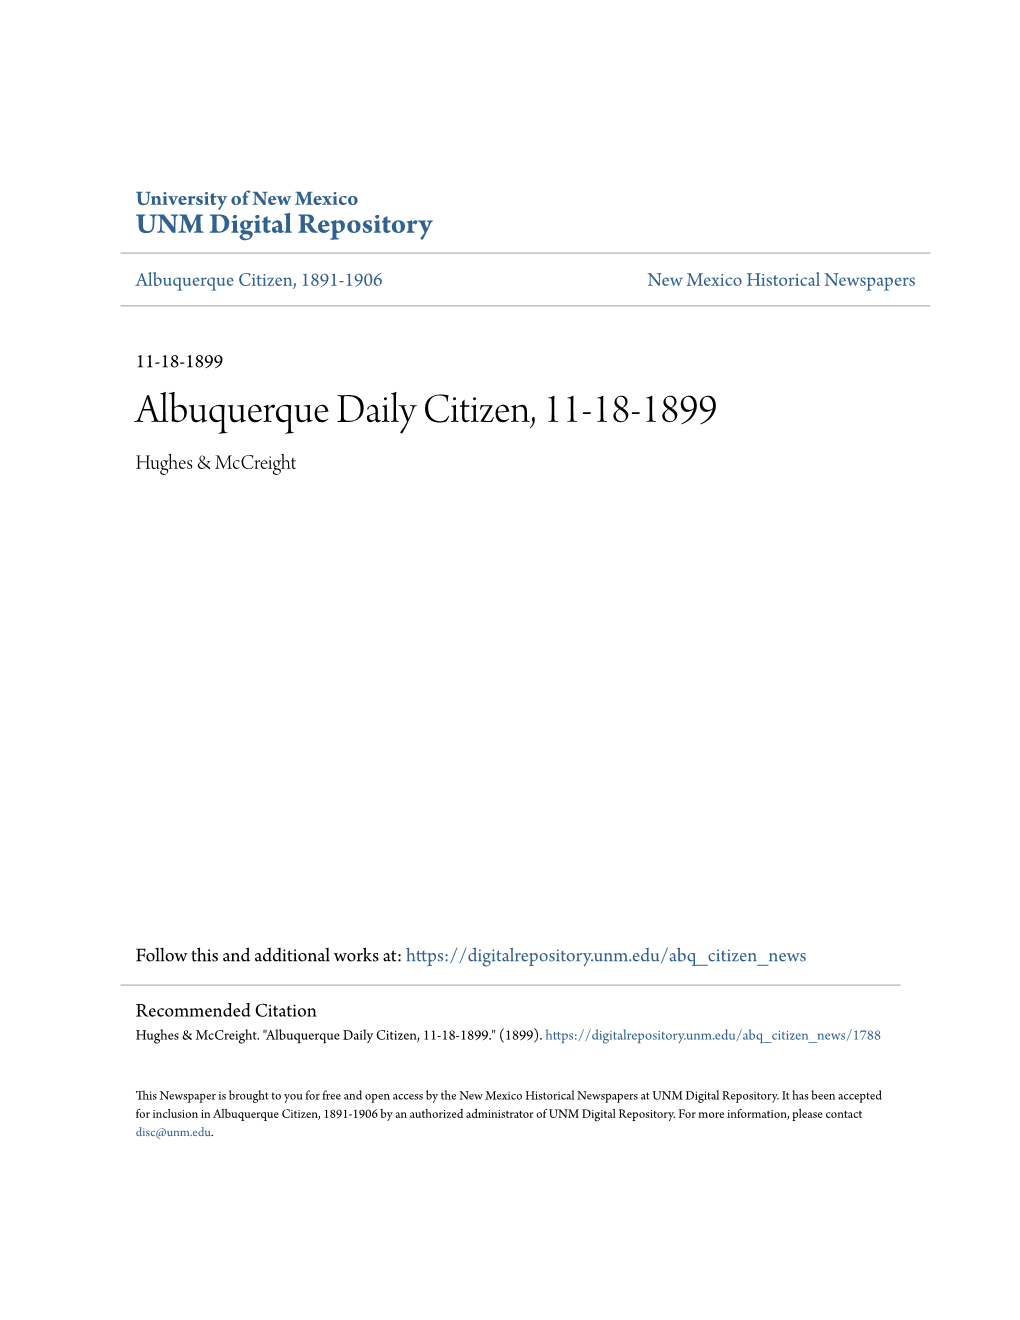 Albuquerque Daily Citizen, 11-18-1899 Hughes & Mccreight